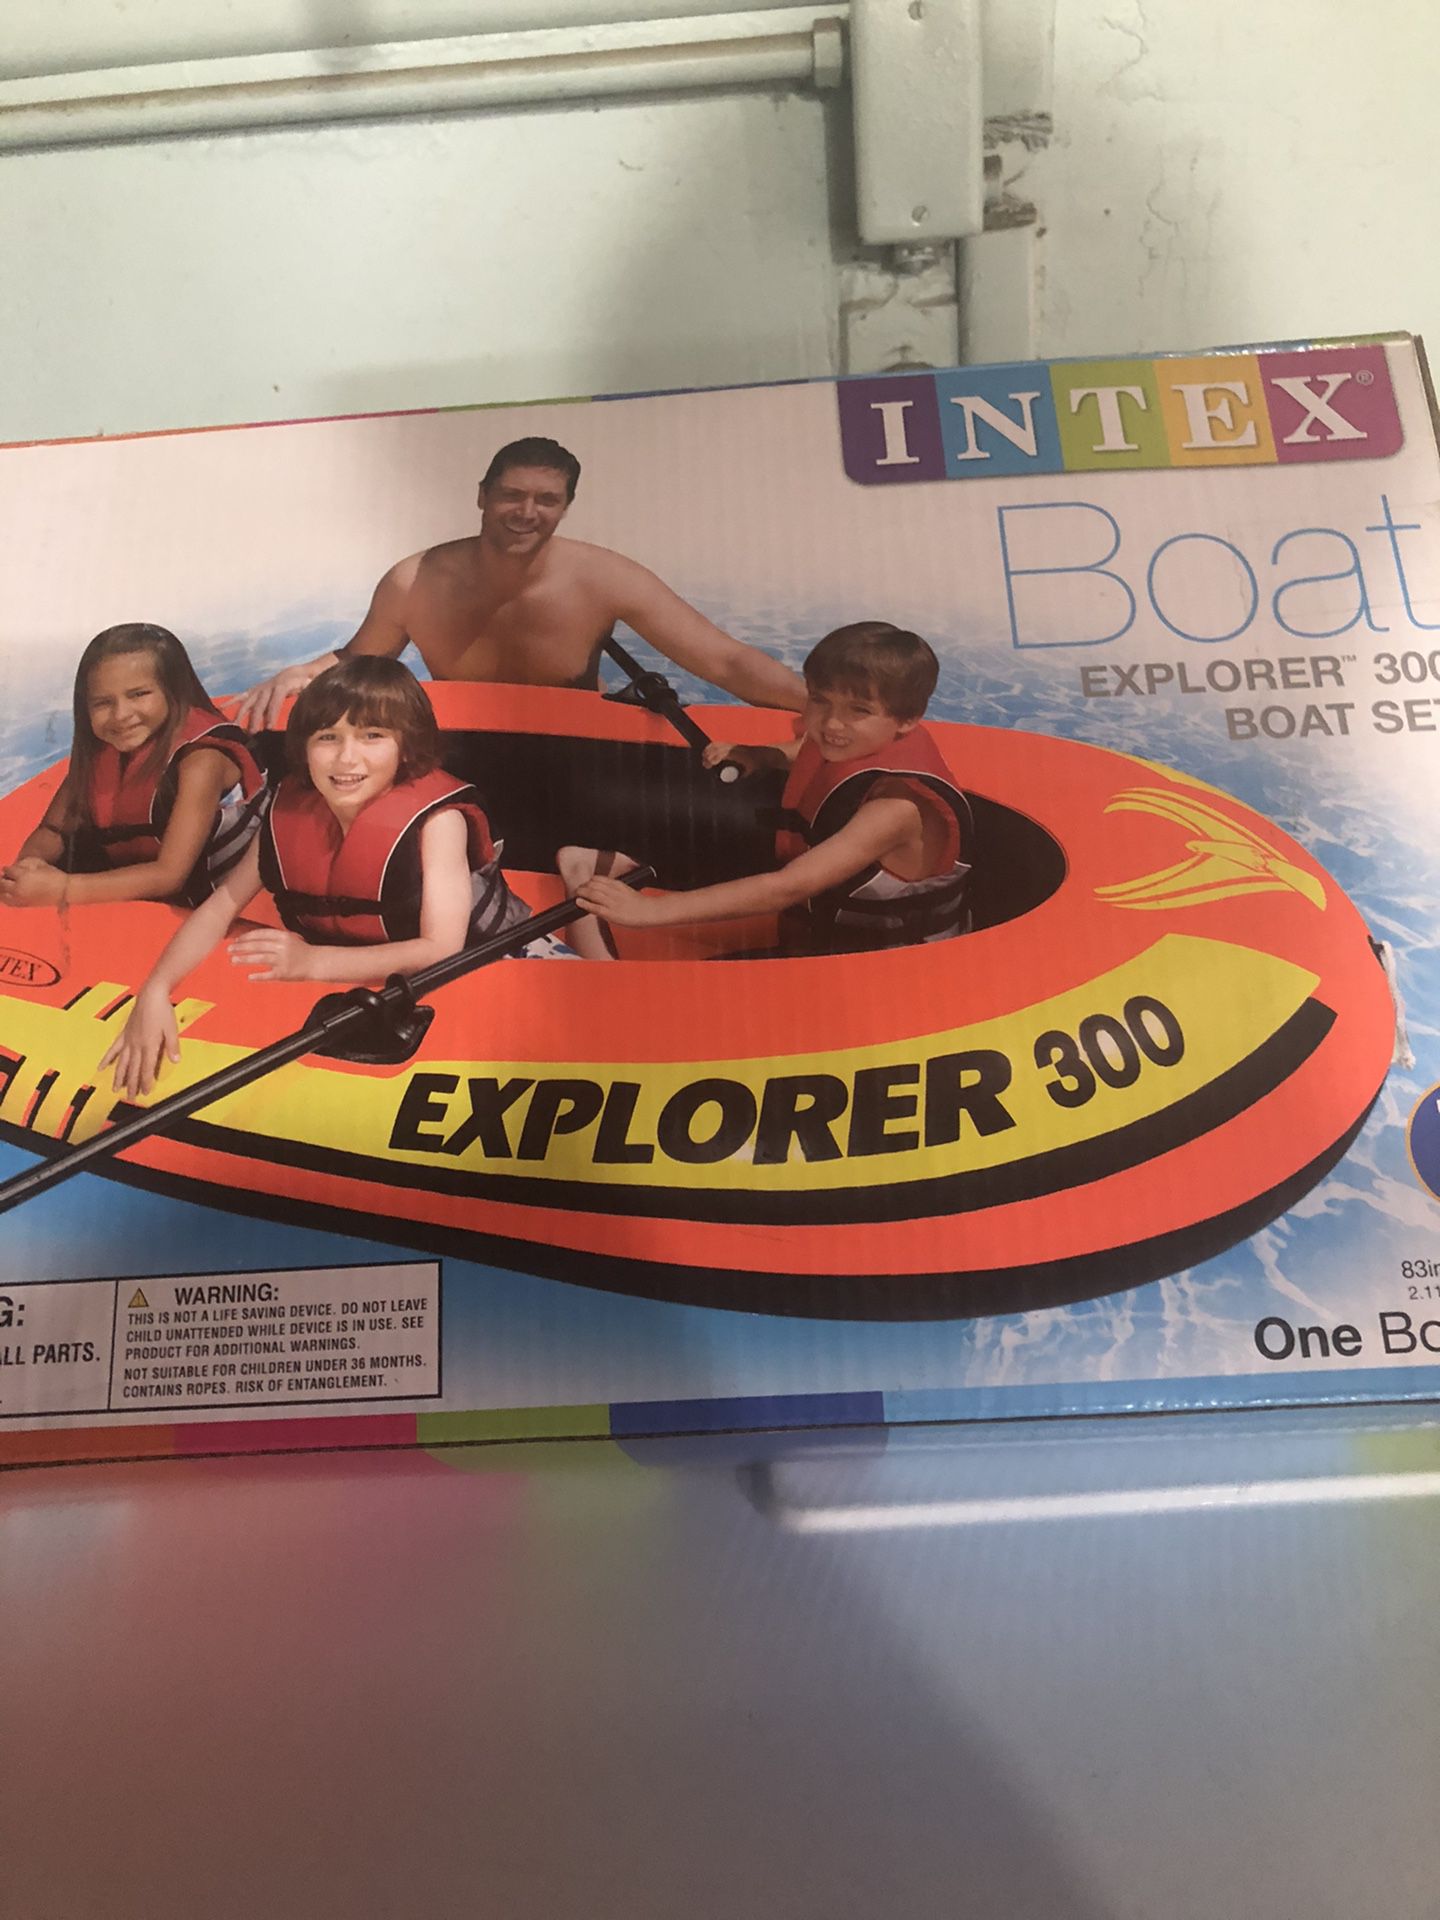 Intex Boat Explorer 300 Set Brand New